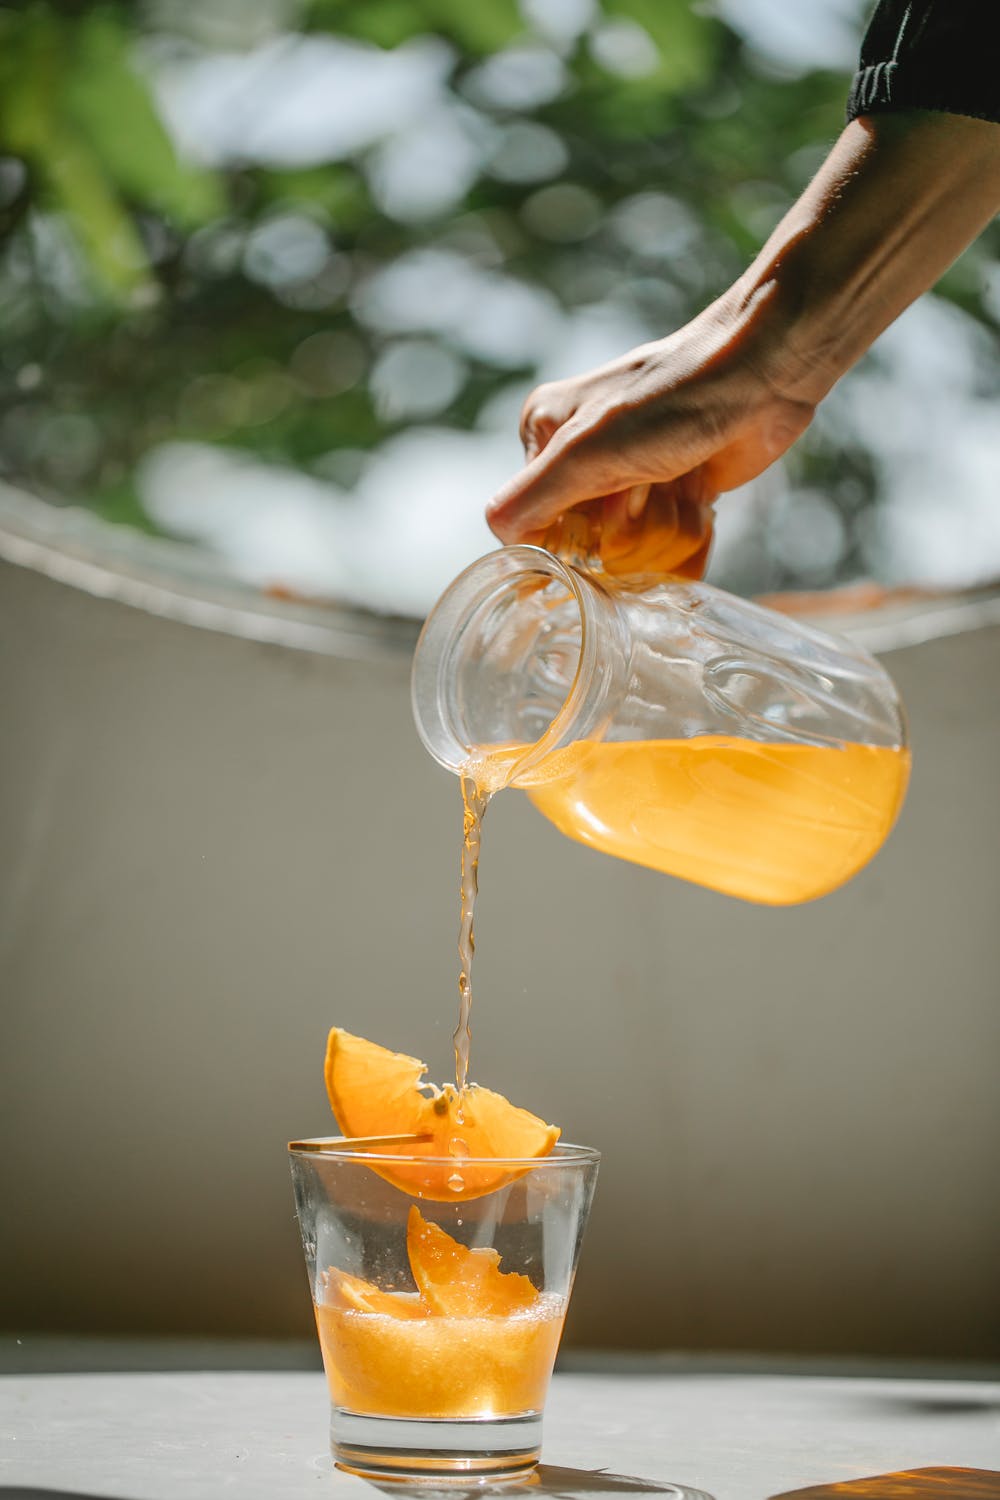 La imagen muestra a una persona echando zumo de naranja en un vaso de cristal. 